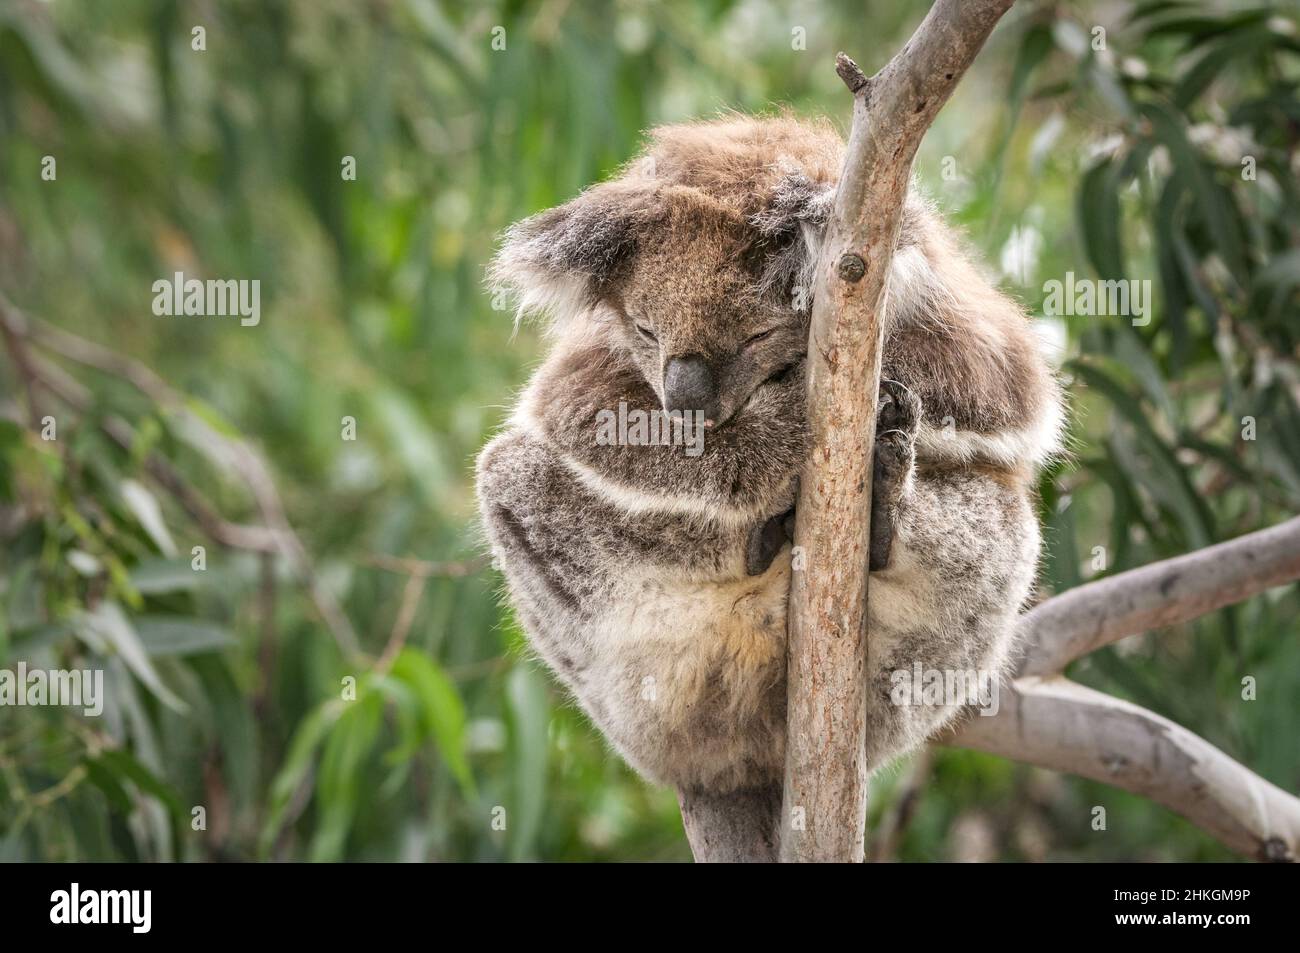 Koala sleeping in a small eucalyptus tree. Stock Photo